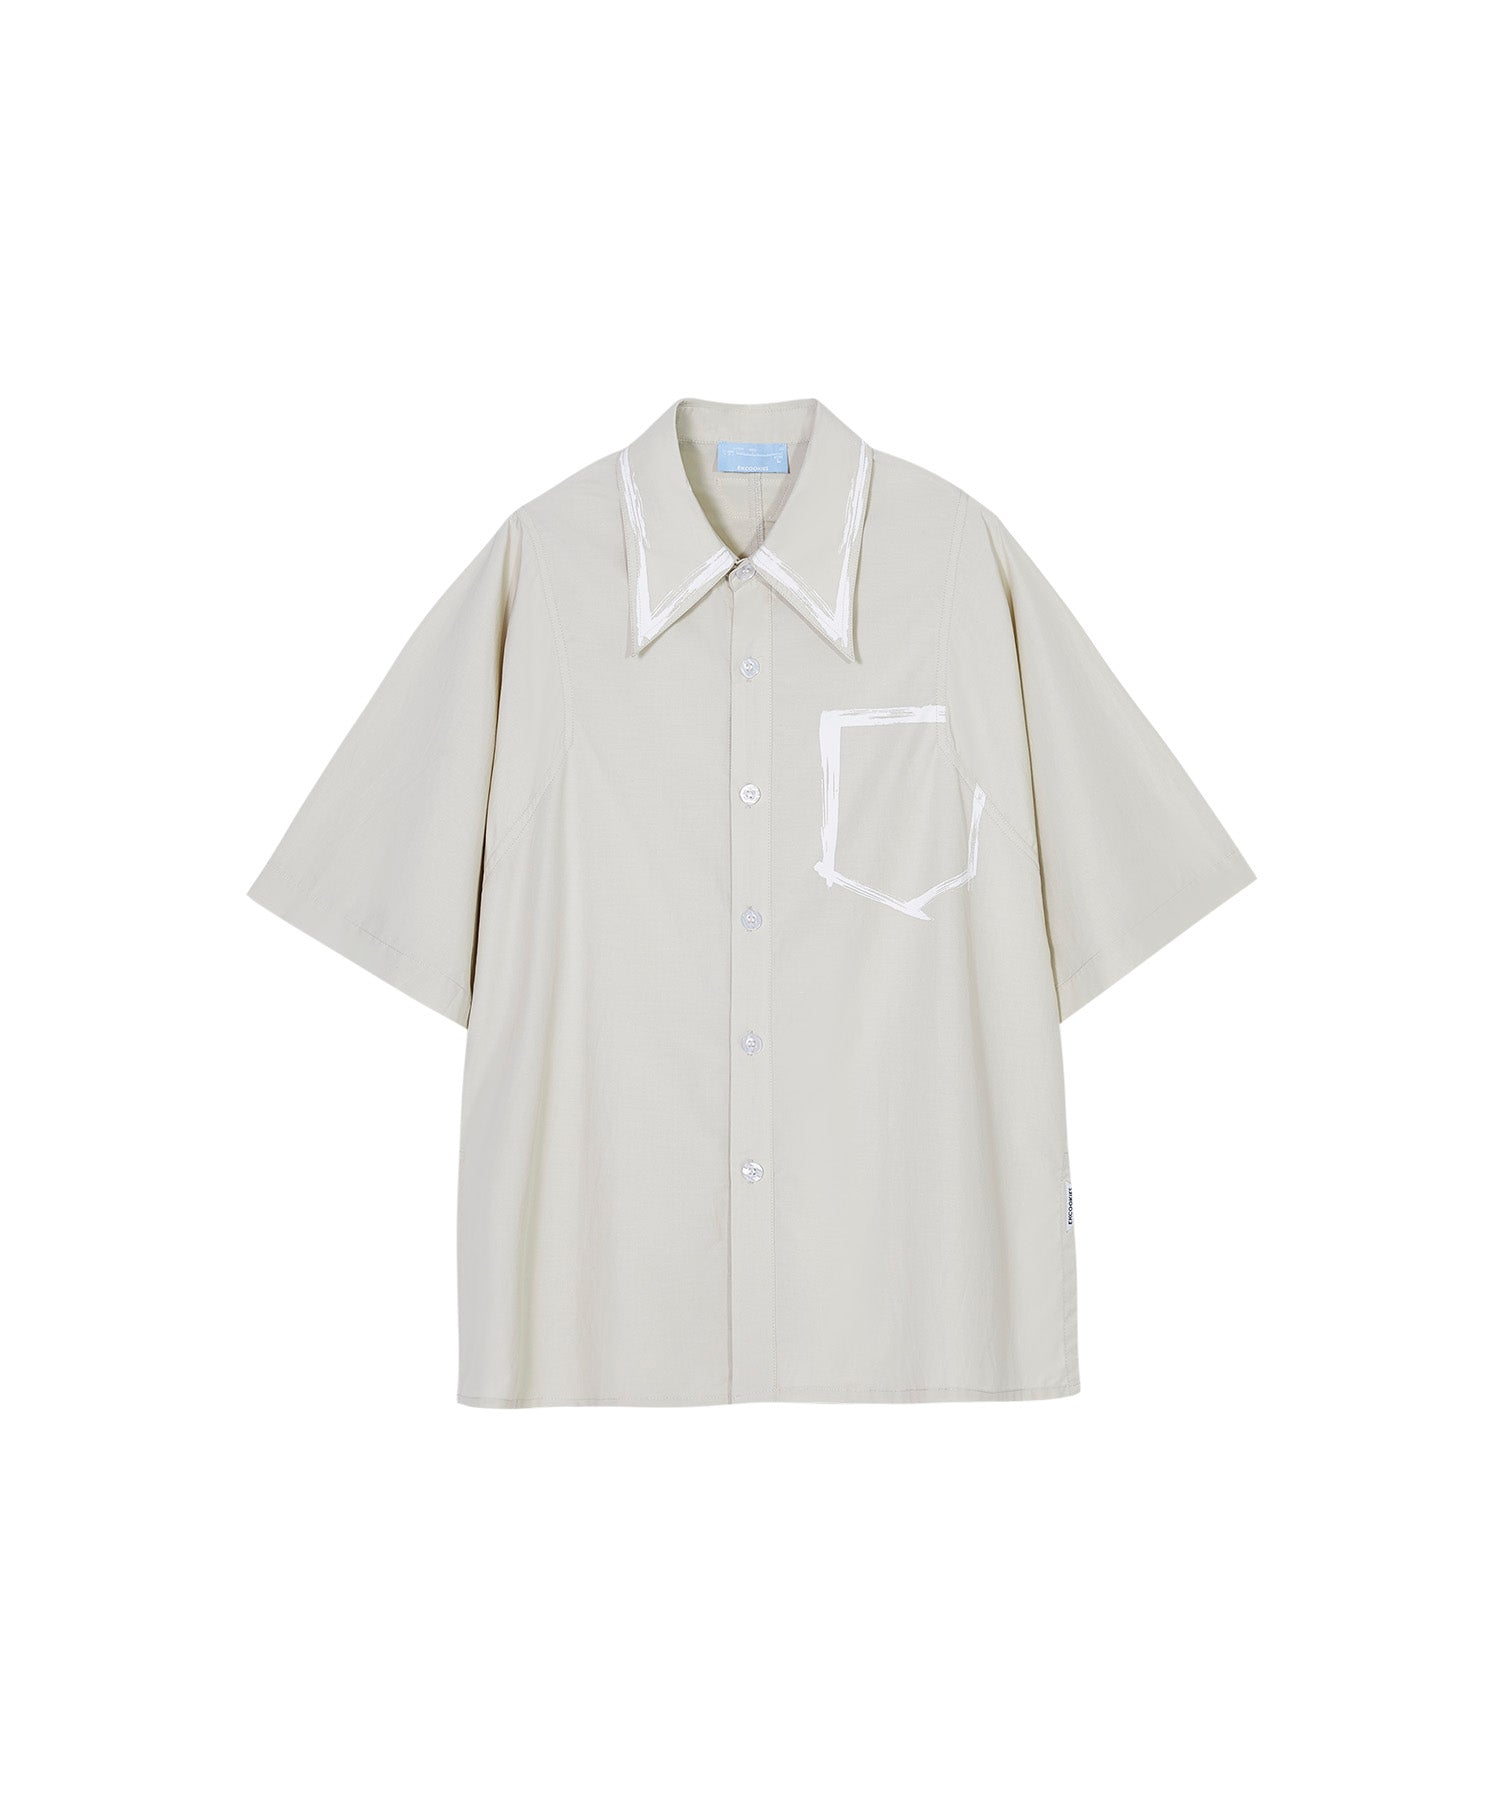 【 UNISEX 】 브러쉬 페인트 오버 셔츠 